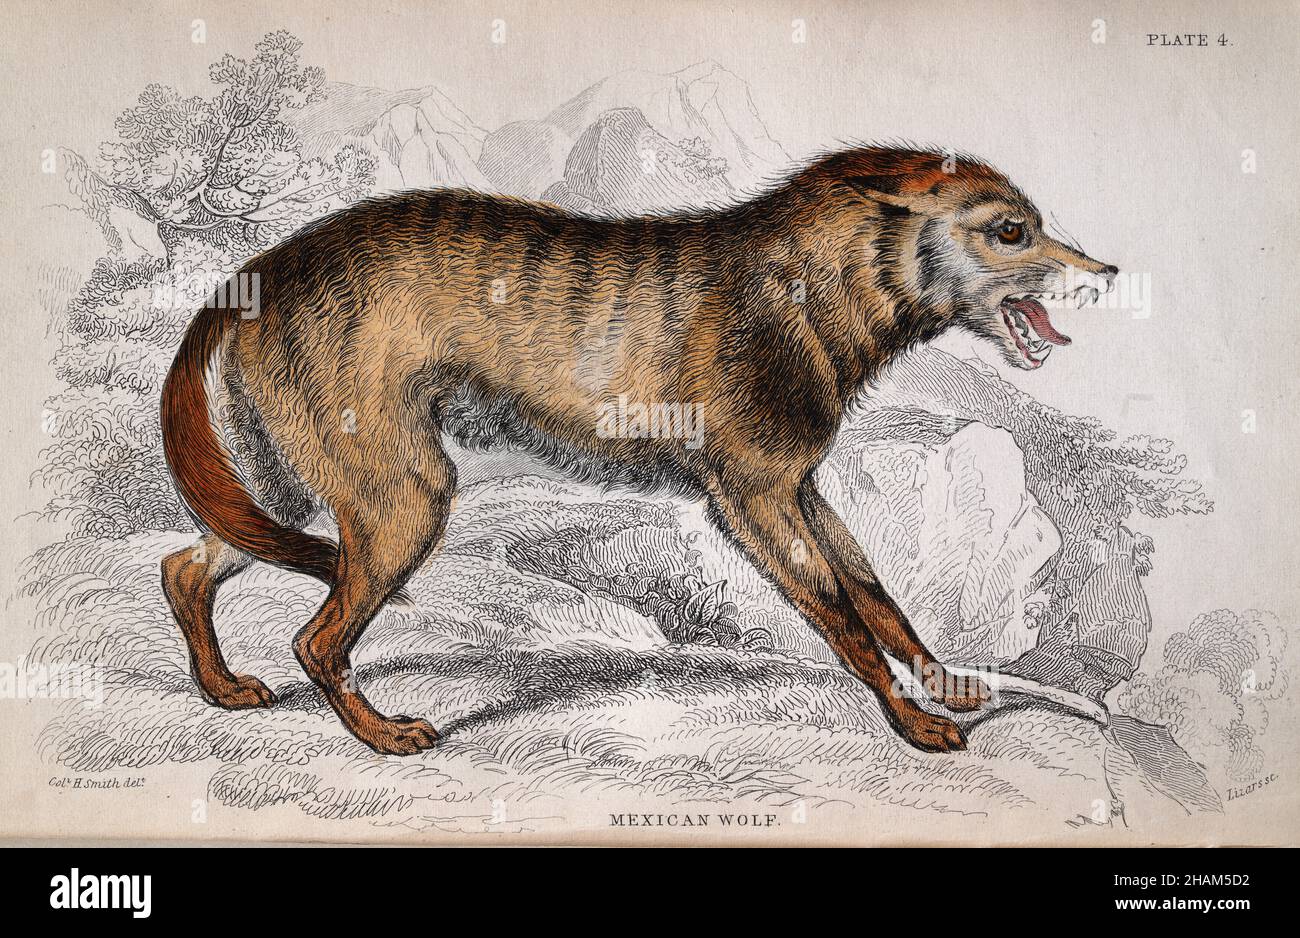 Illustrazione d'epoca di un lupo messicano, Canis lupus baileyi, o lobo una sottospecie di lupo grigio originaria dell'Arizona sudorientale e del New Mexico meridionale Foto Stock